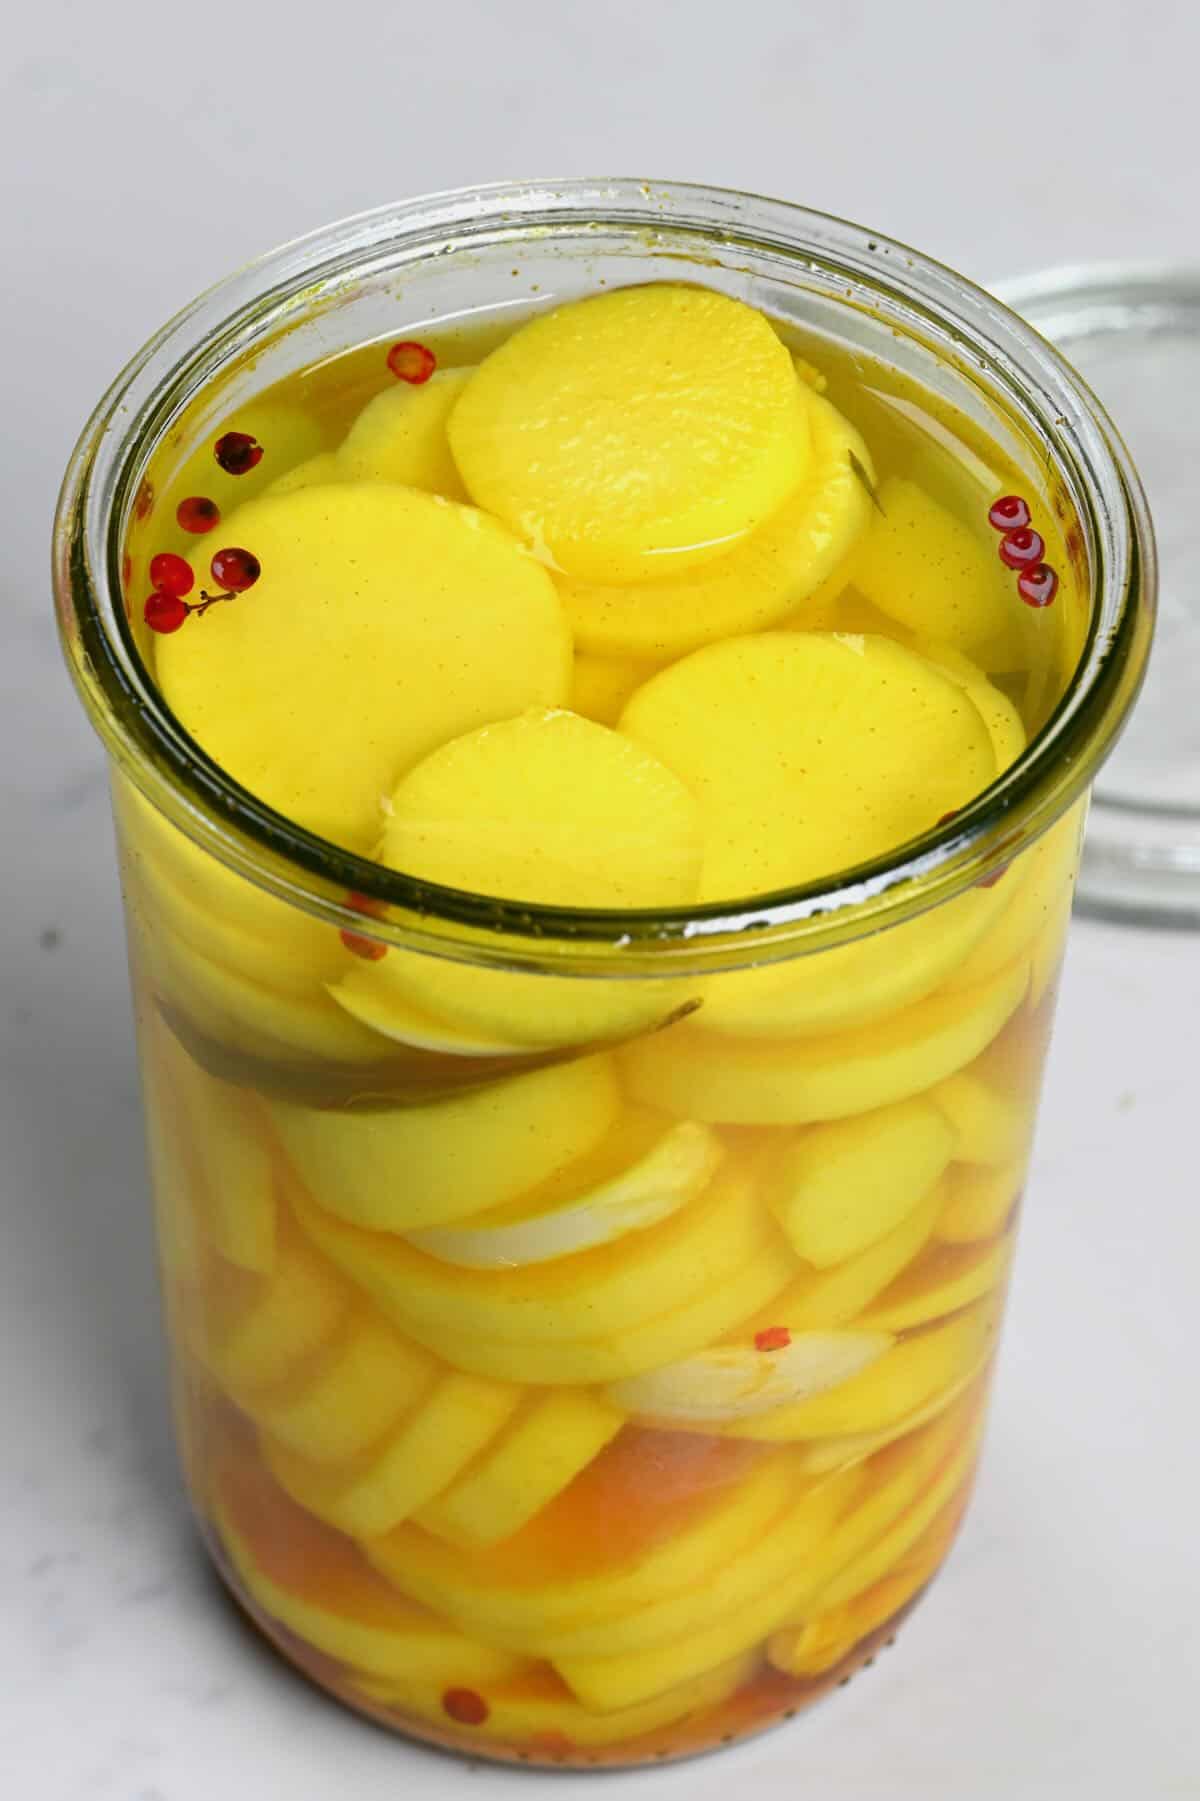 Daikon pickled radish in a jar